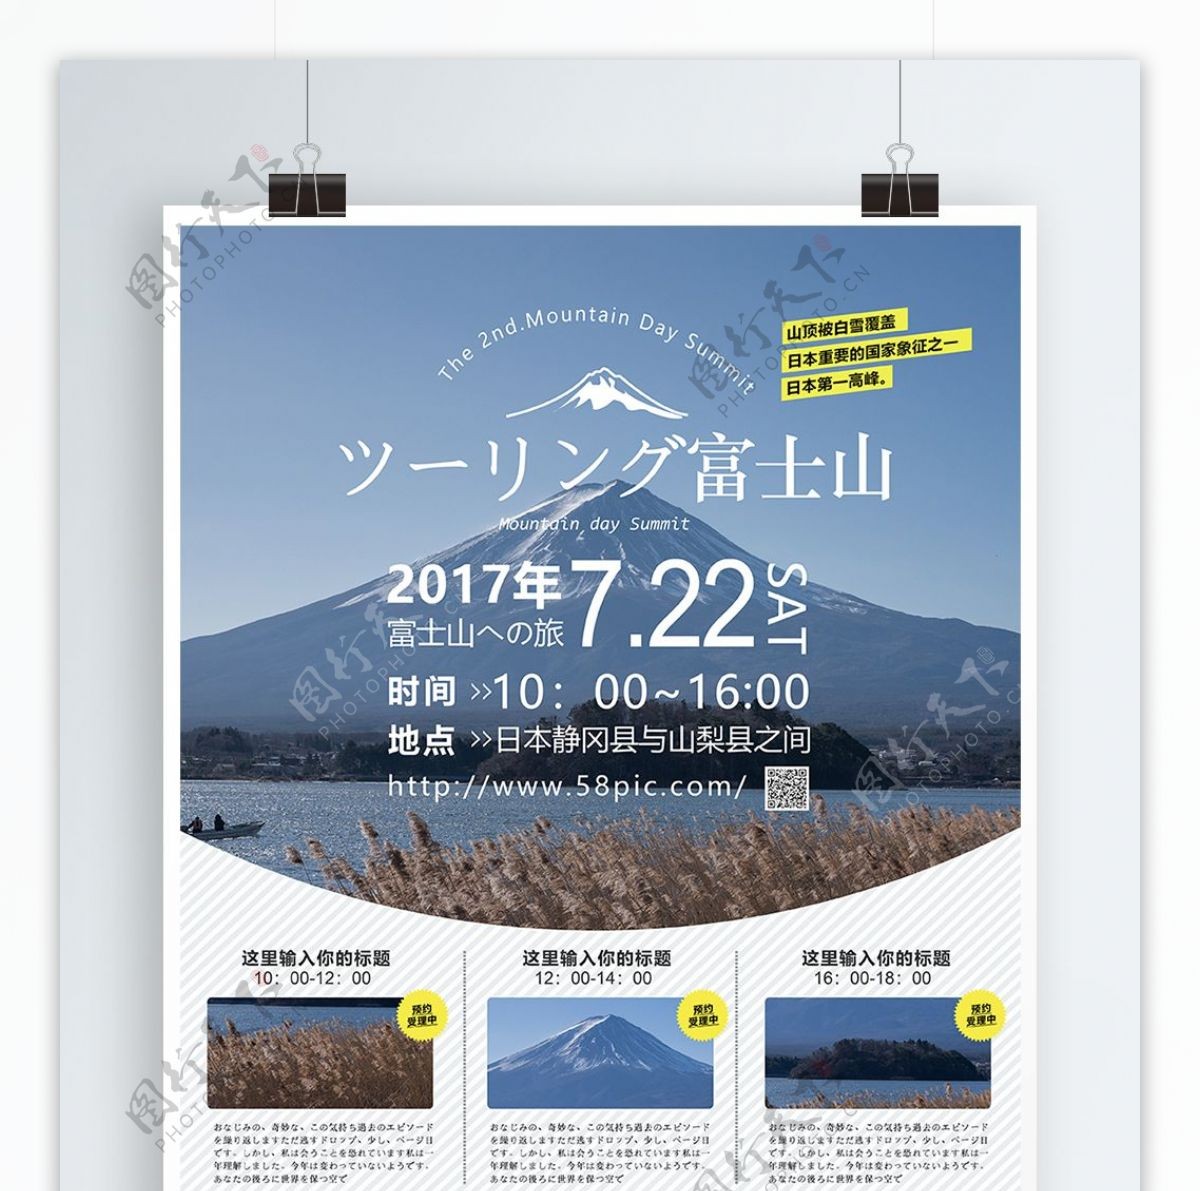 简约风日本富士山旅游宣传海报